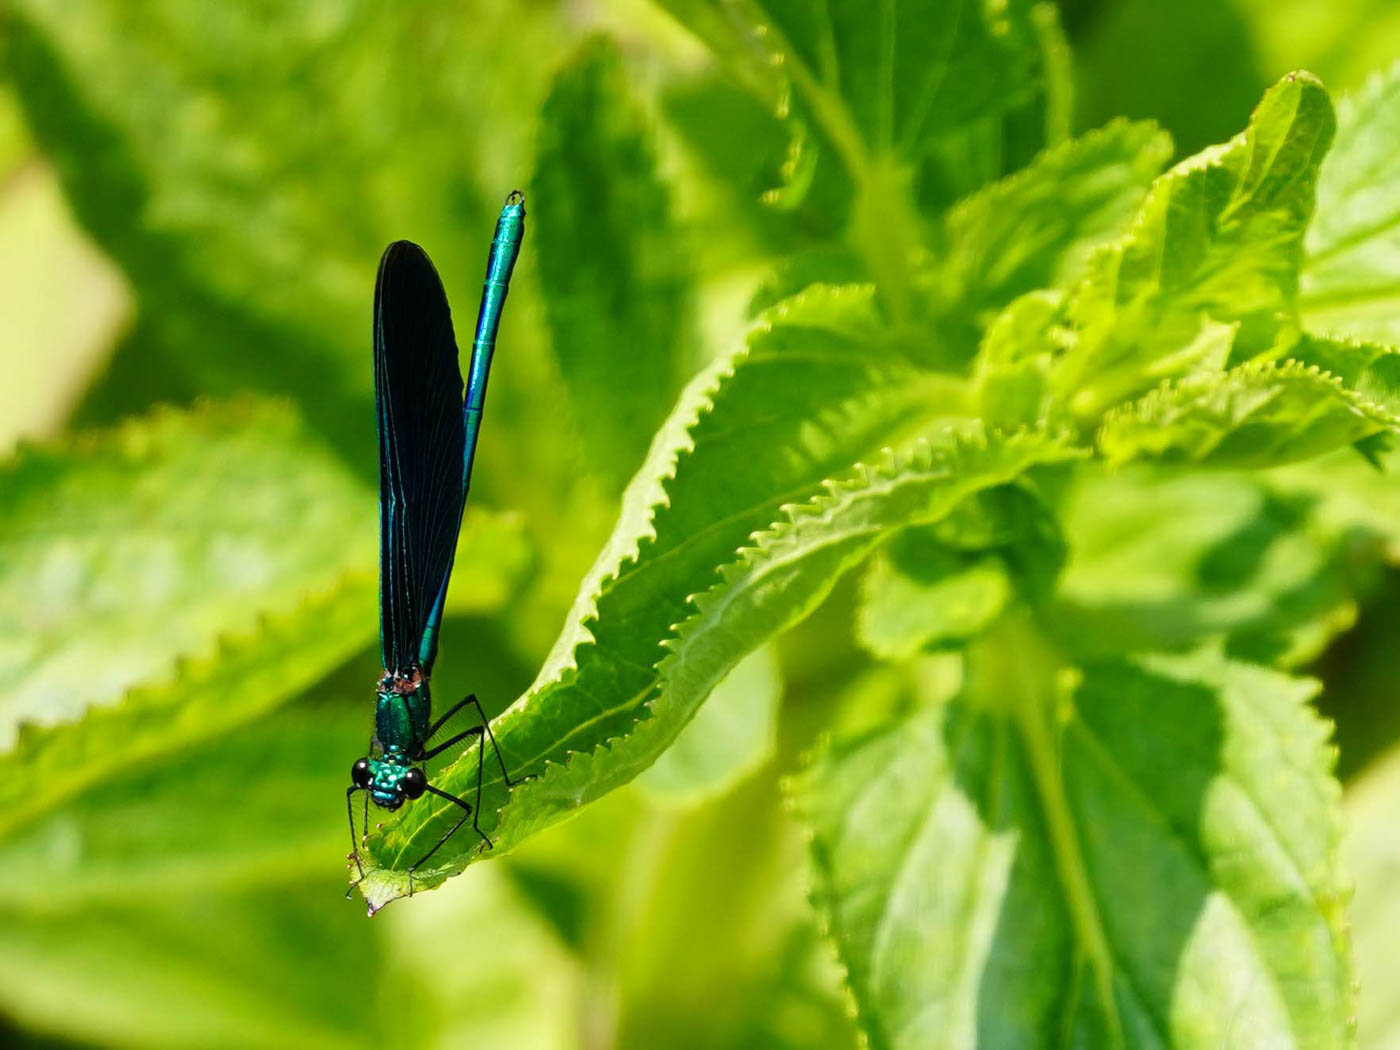 Nahaufnahme von einer blauschwarzen Libelle auf einem grünen Blatt aus Else’s Fotowerkstatt.